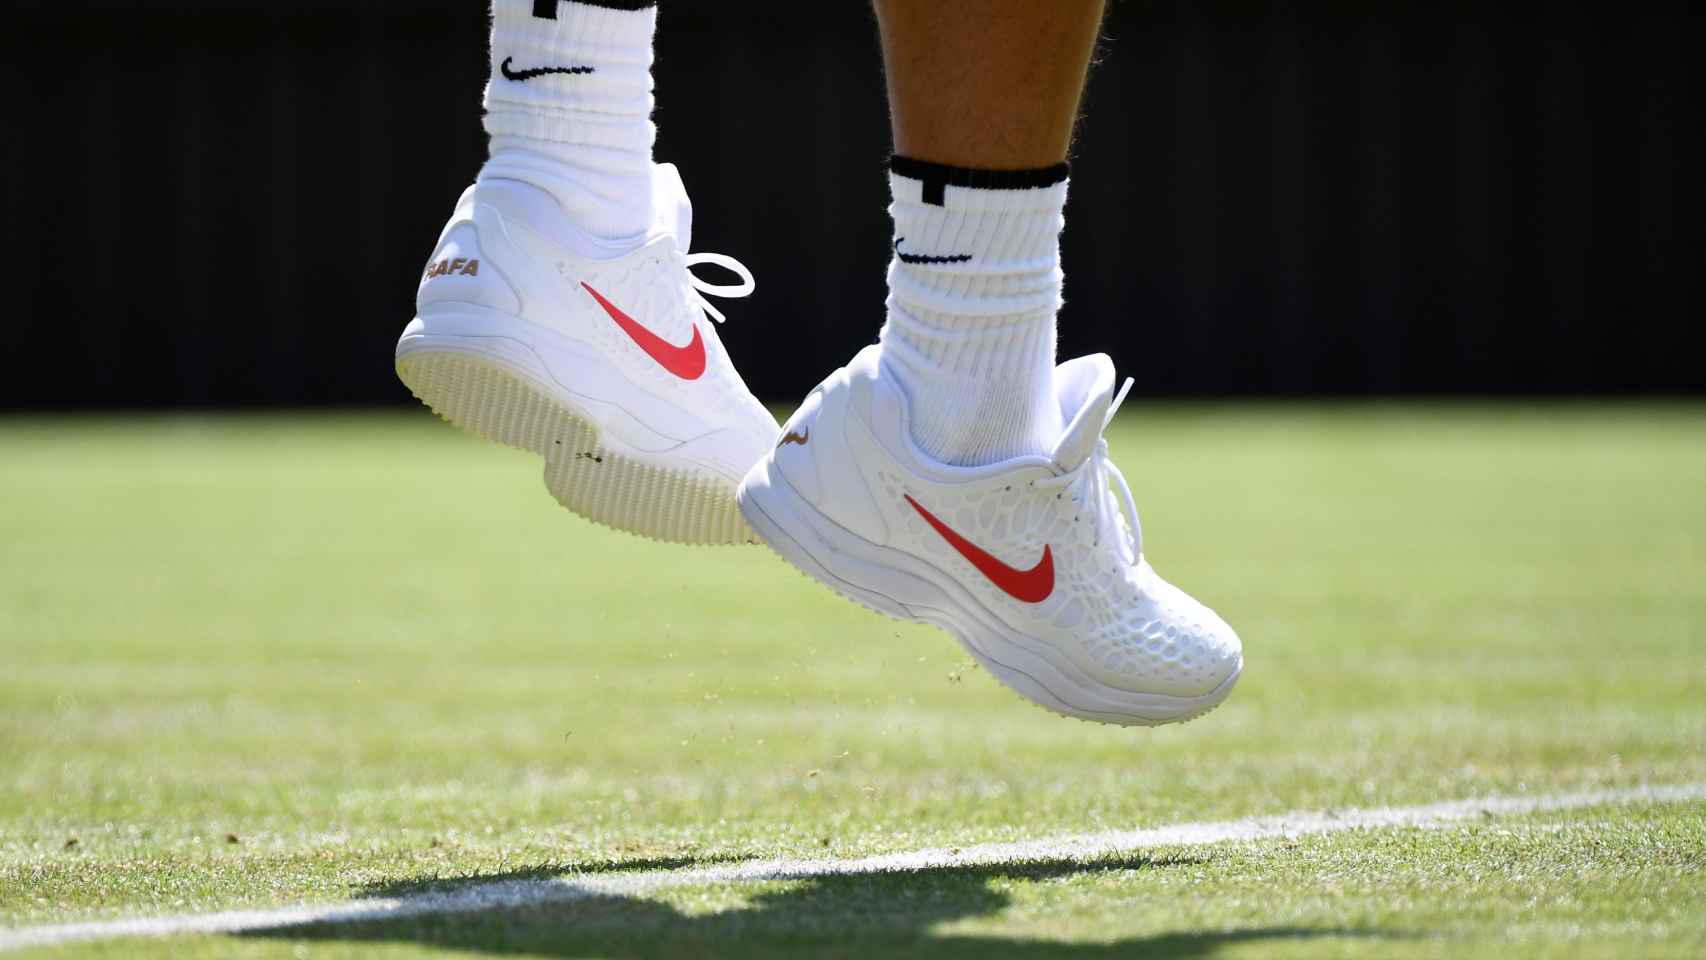 Los pies de Nadal, durante un saque en Wimbledon.